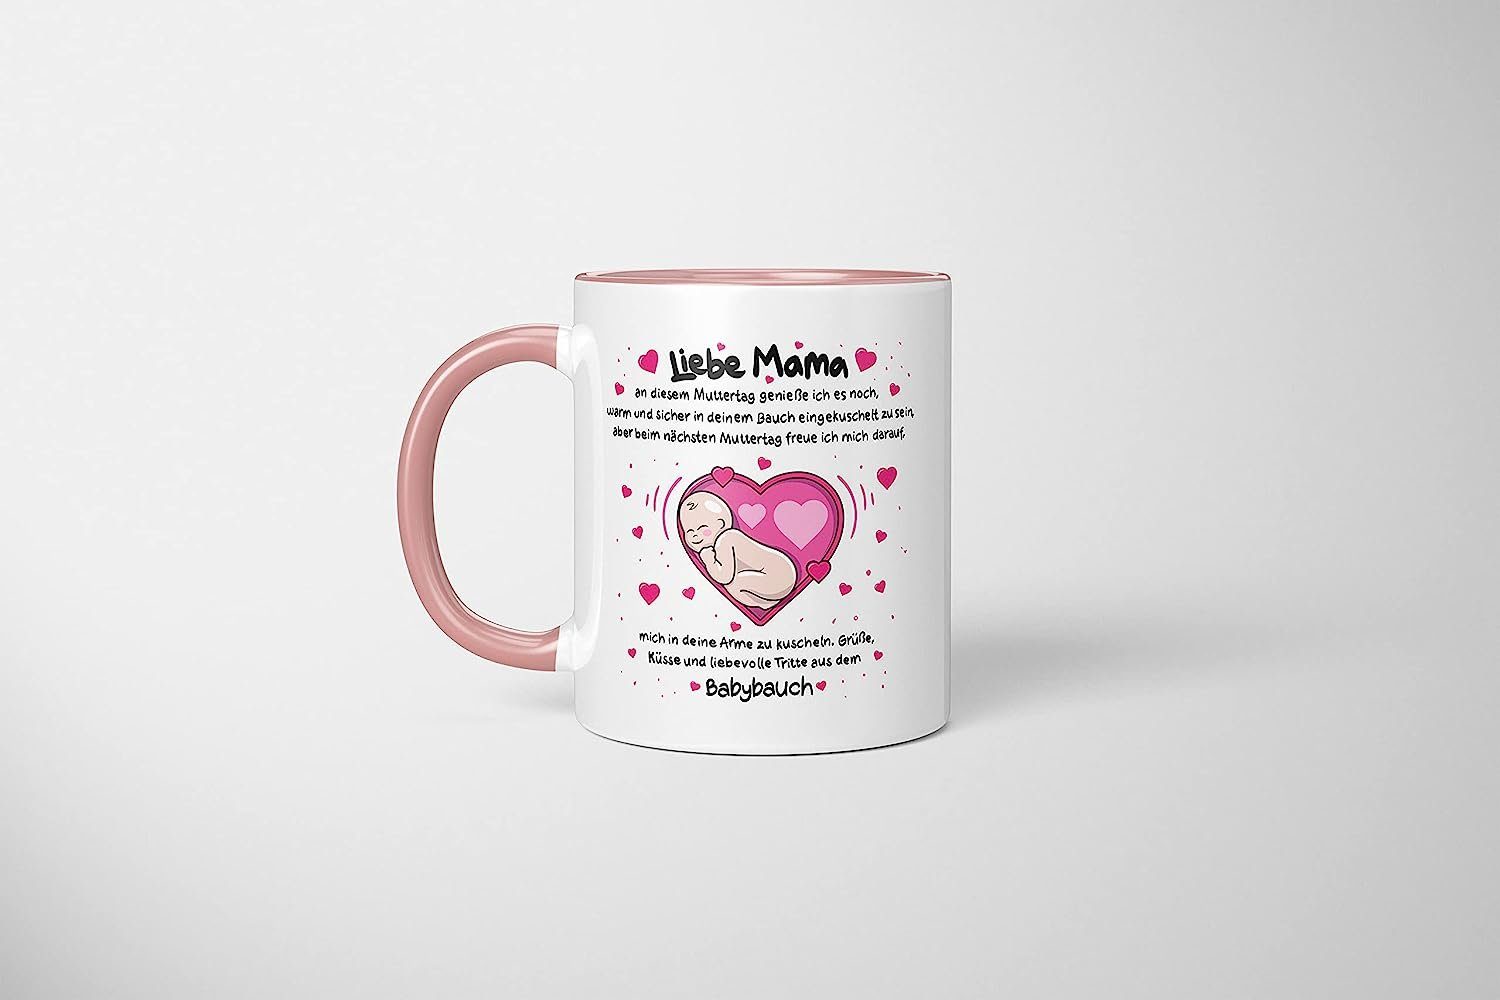 TassenTicker Tasse Muttertag werdende eine Mama - Liebe Mama, für - 330ml LIEBTASTISCH -Geschenk Rosa